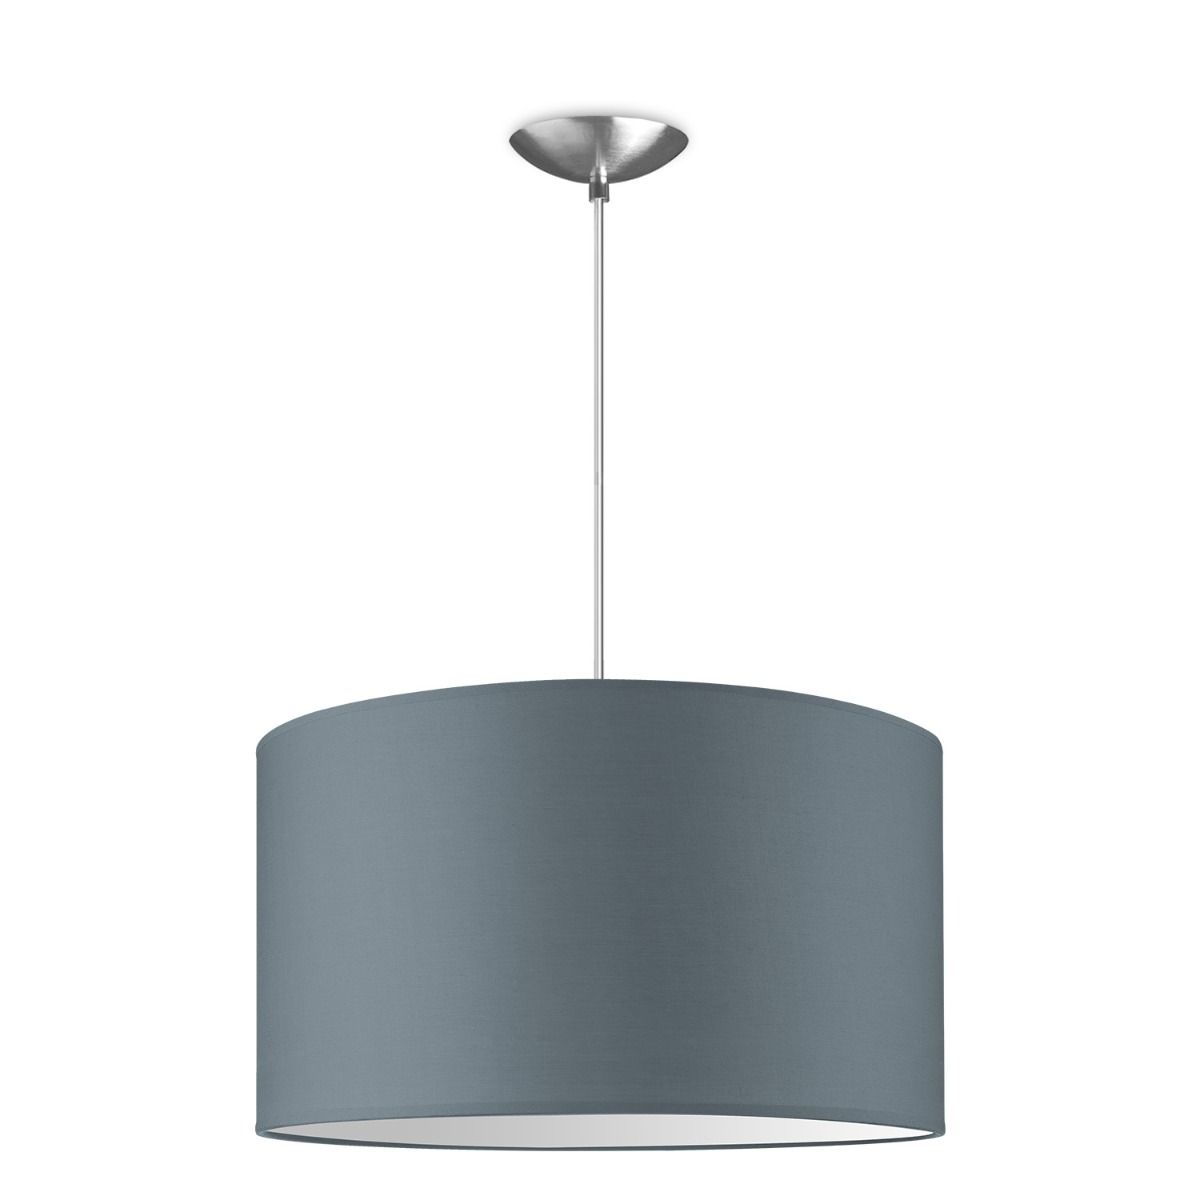 Light depot - hanglamp basic bling Ø 40 cm - lichtgrijs - Outlet